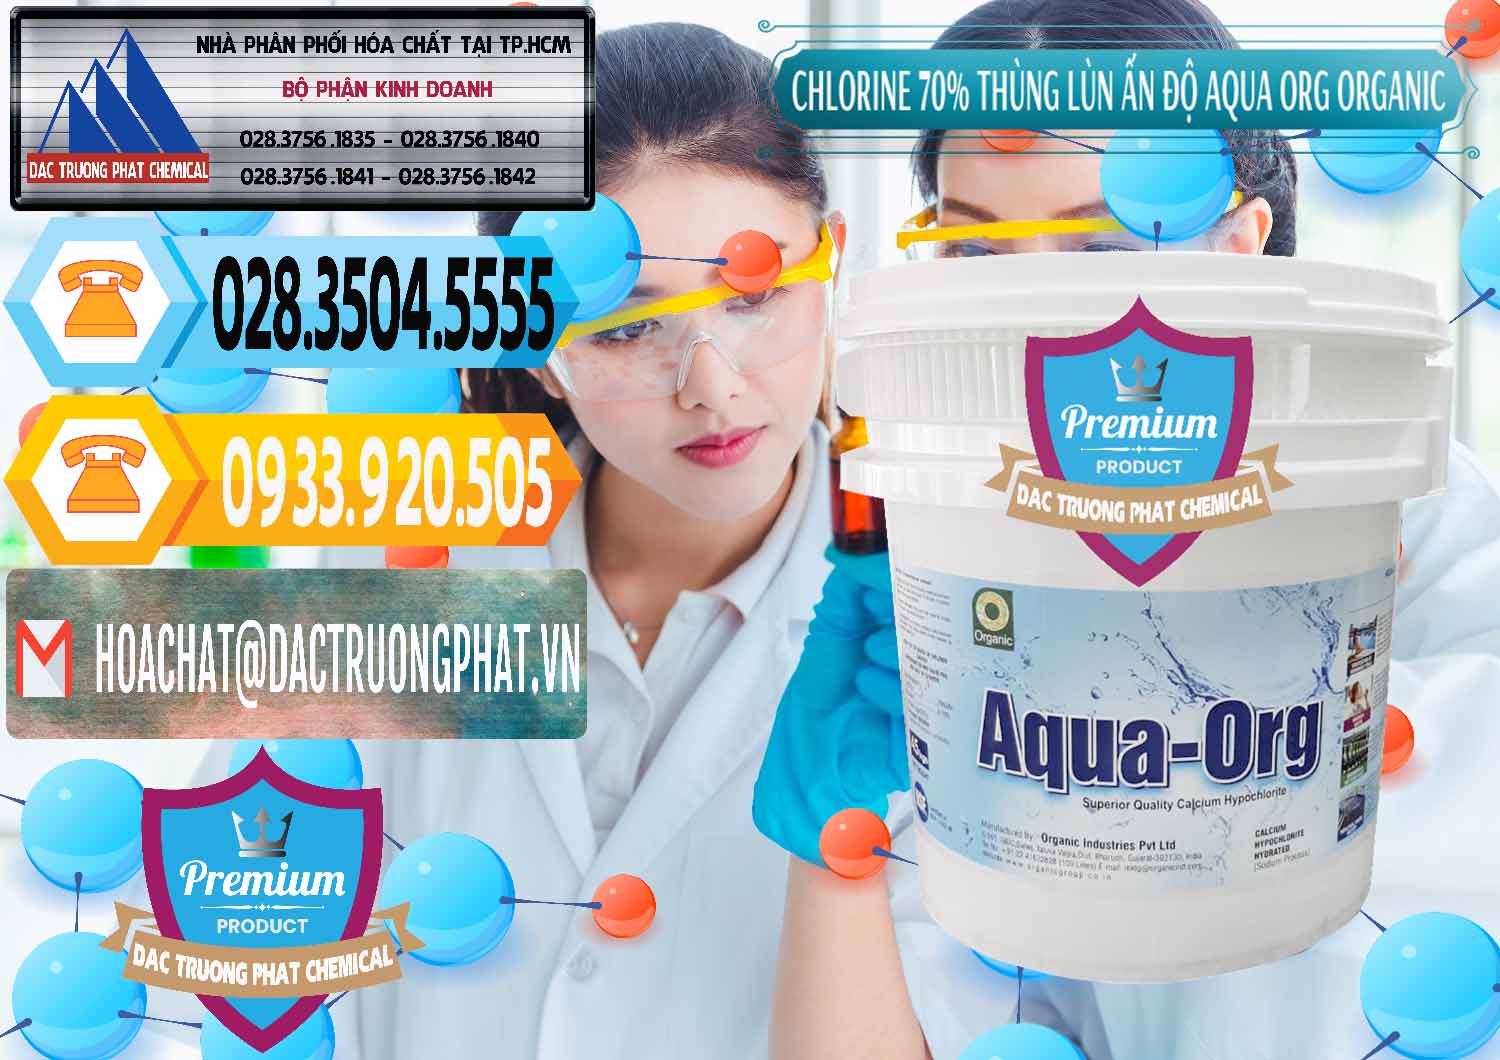 Cty cung cấp _ bán Chlorine – Clorin 70% Thùng Lùn Ấn Độ Aqua ORG Organic India - 0212 - Cty cung cấp & phân phối hóa chất tại TP.HCM - hoachattayrua.net